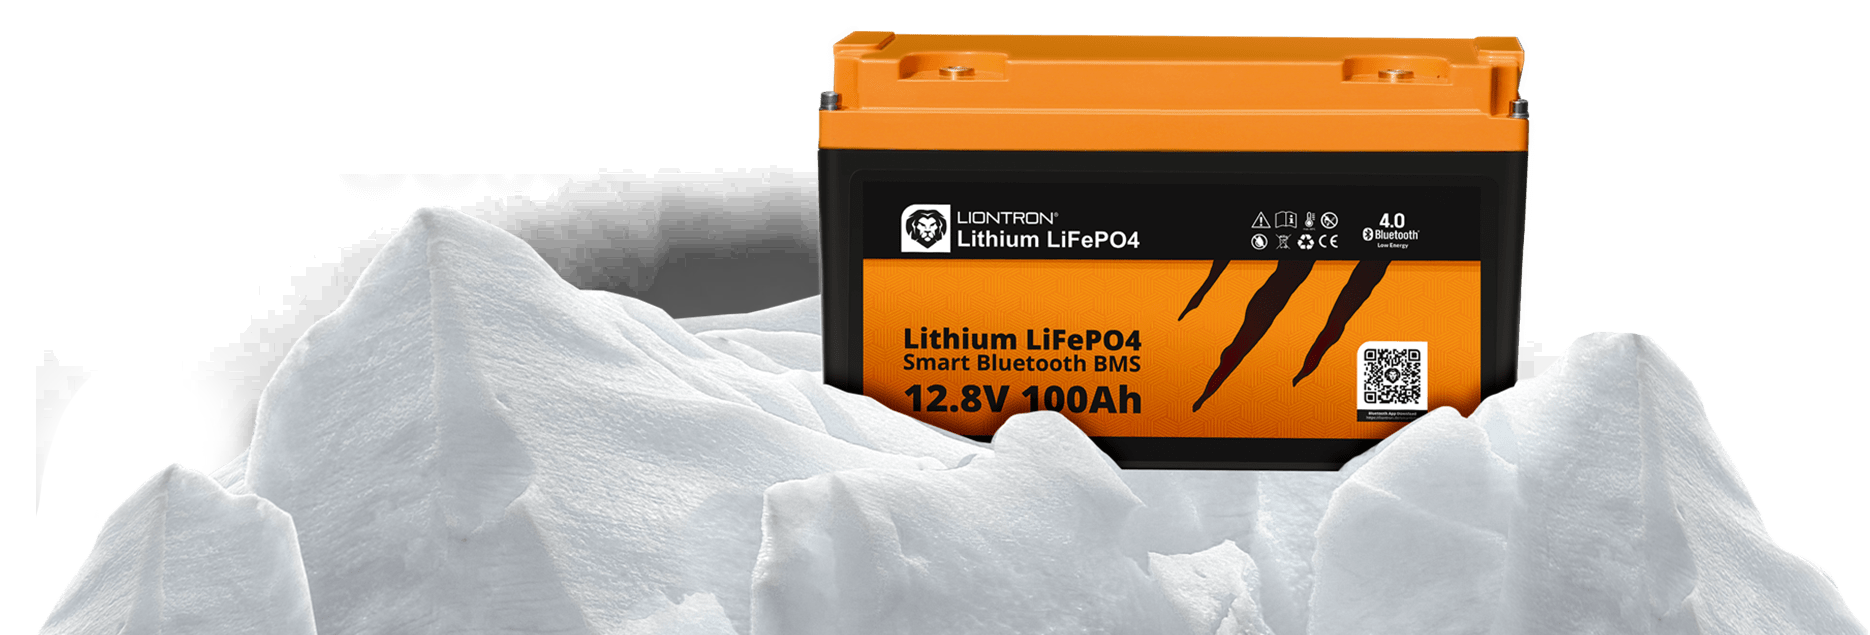 LIONTRON LiFePO4 Wohnmobil Untersitz Akkus - LIONTRON Lithium